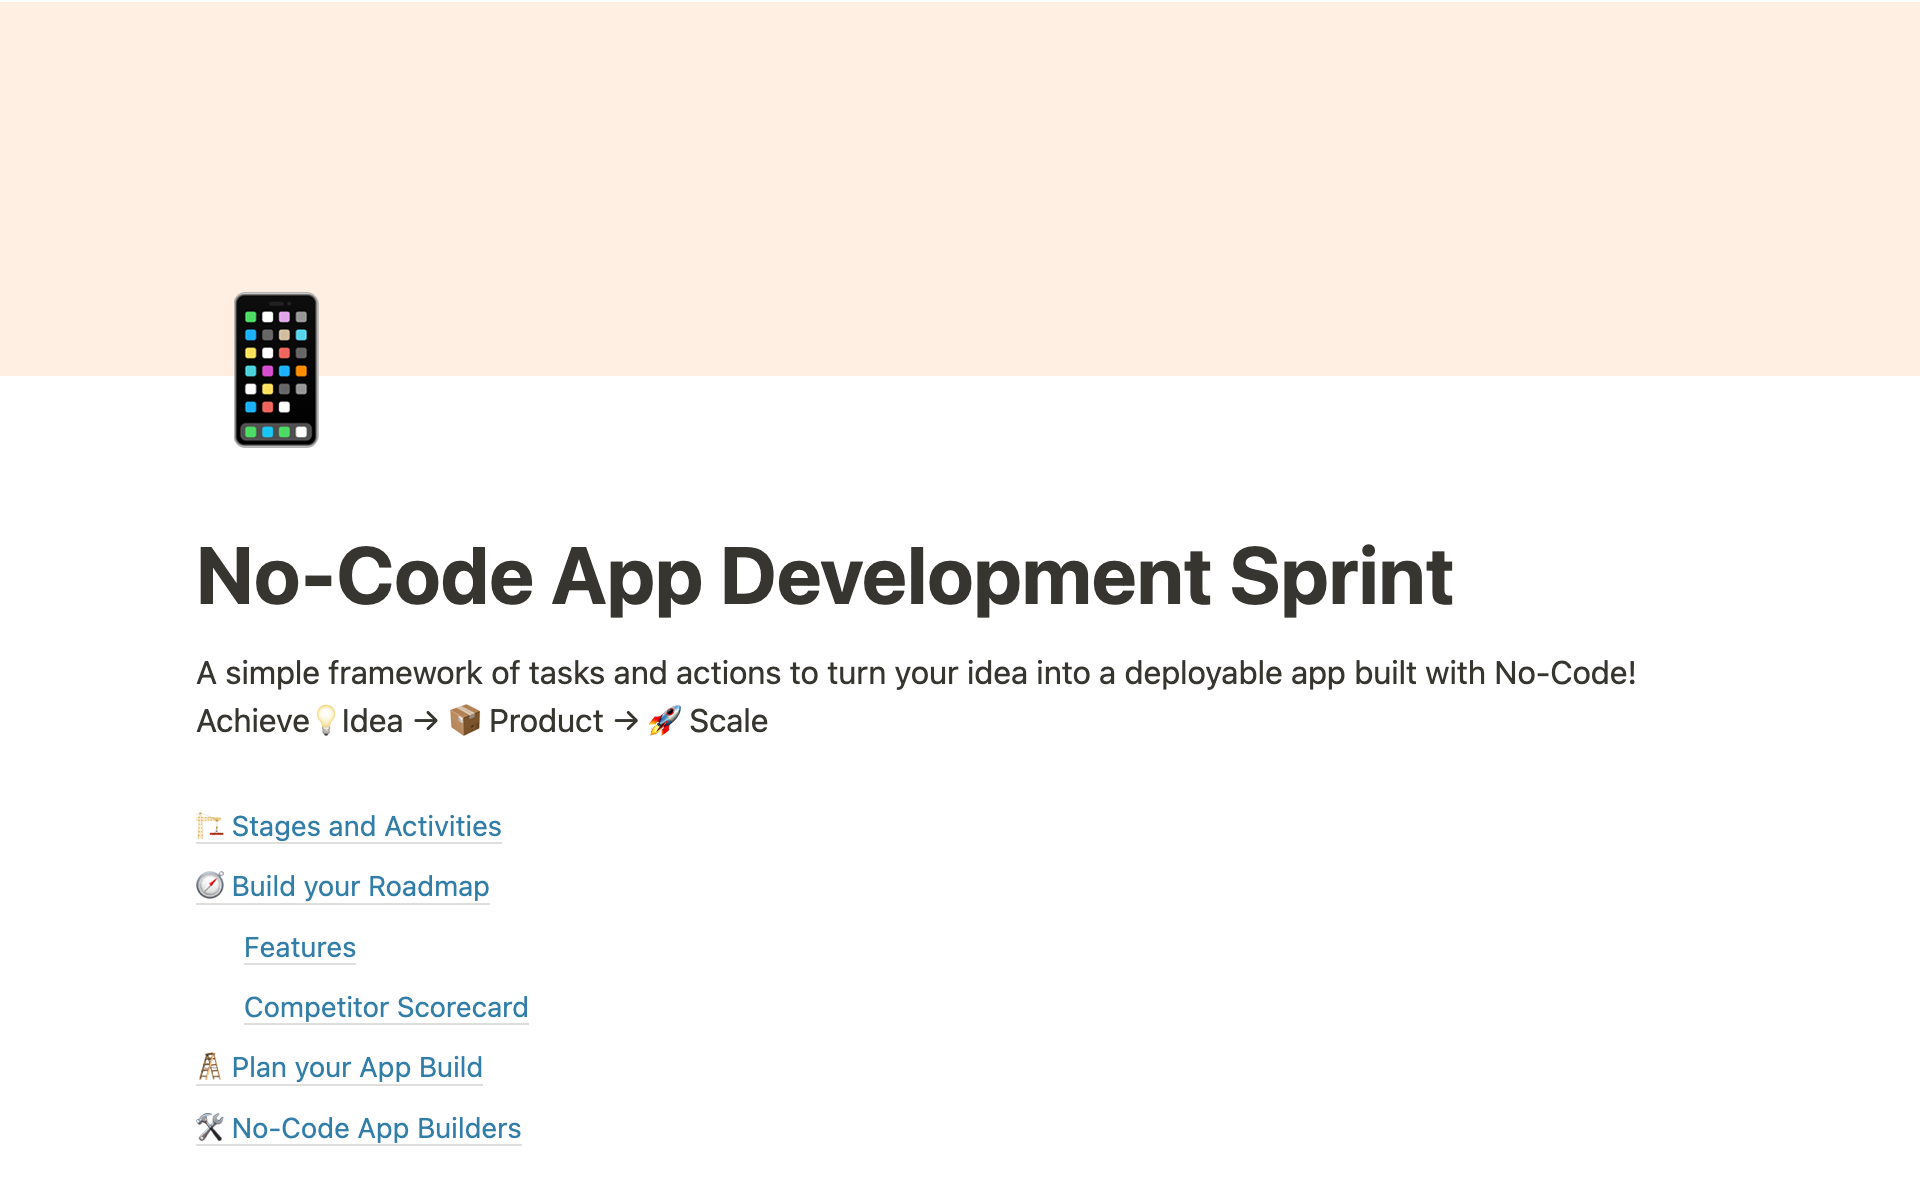 Uma prévia do modelo para No-Code App Development Sprint